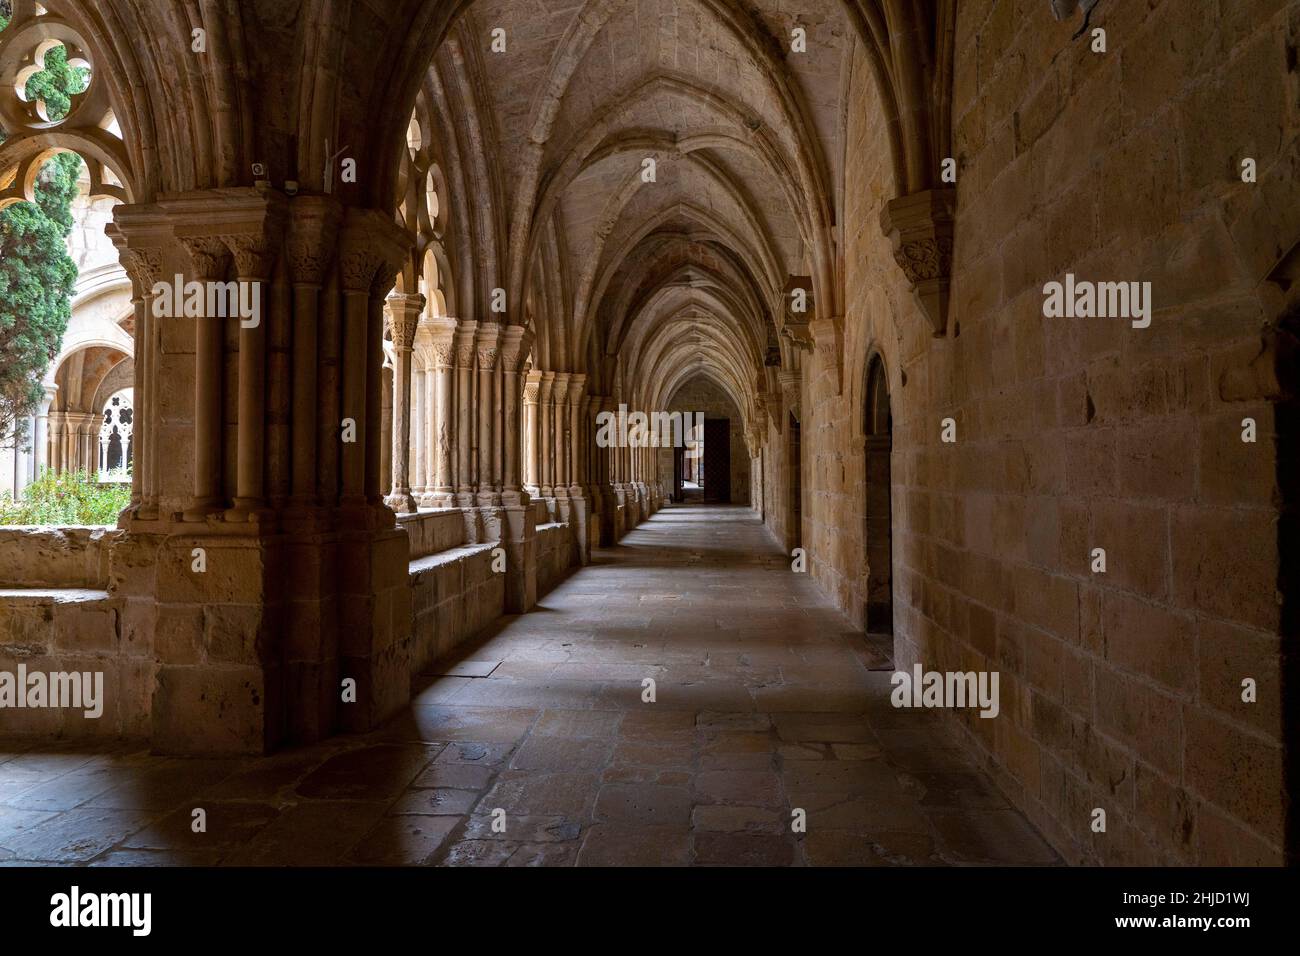 Claustro de la Abadía de Poblet, Reial Monestir de Santa Maria de Poblet, Cataluña, España. Se trata de un monasterio cisterciense, fundado en 1151, situado en la ciudad de f Foto de stock